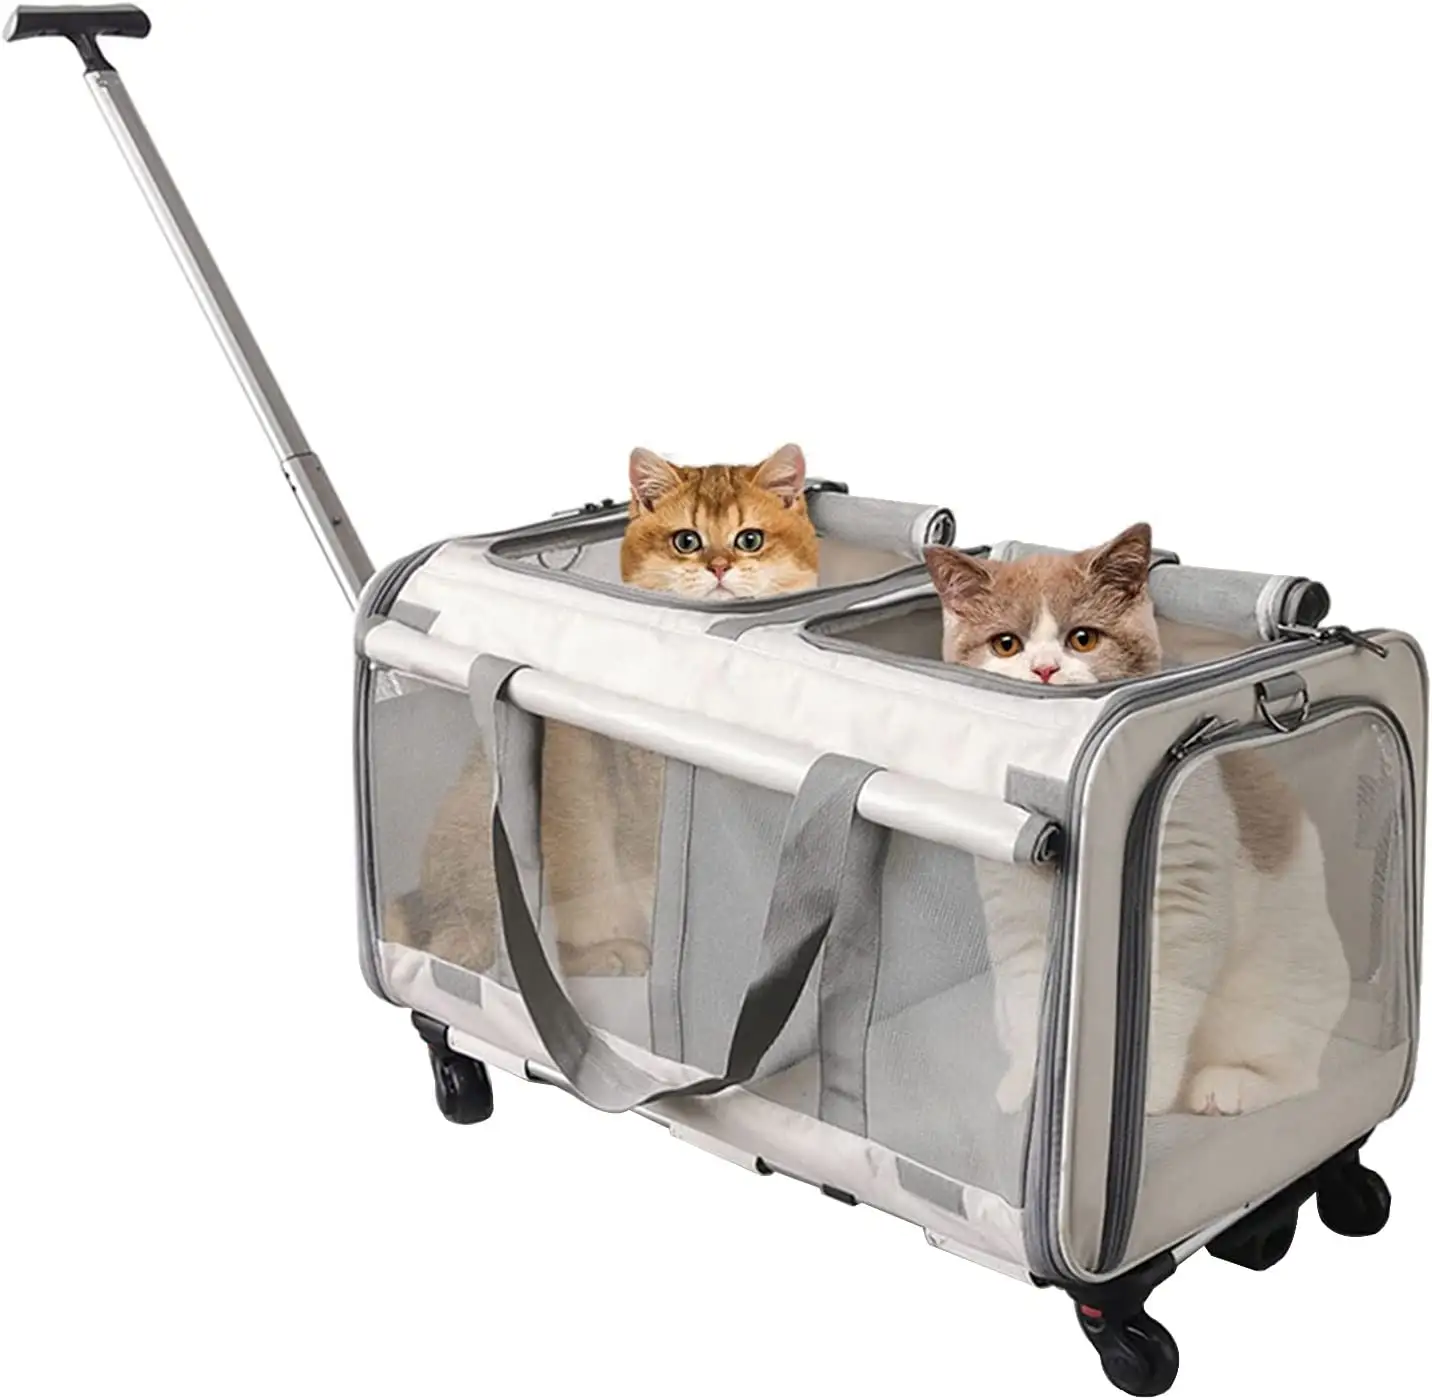 JW PET Rolling Travel Airline zugelassener Hunde träger, Haustier träger mit Rädern, rollender Haustier träger erweiterbar